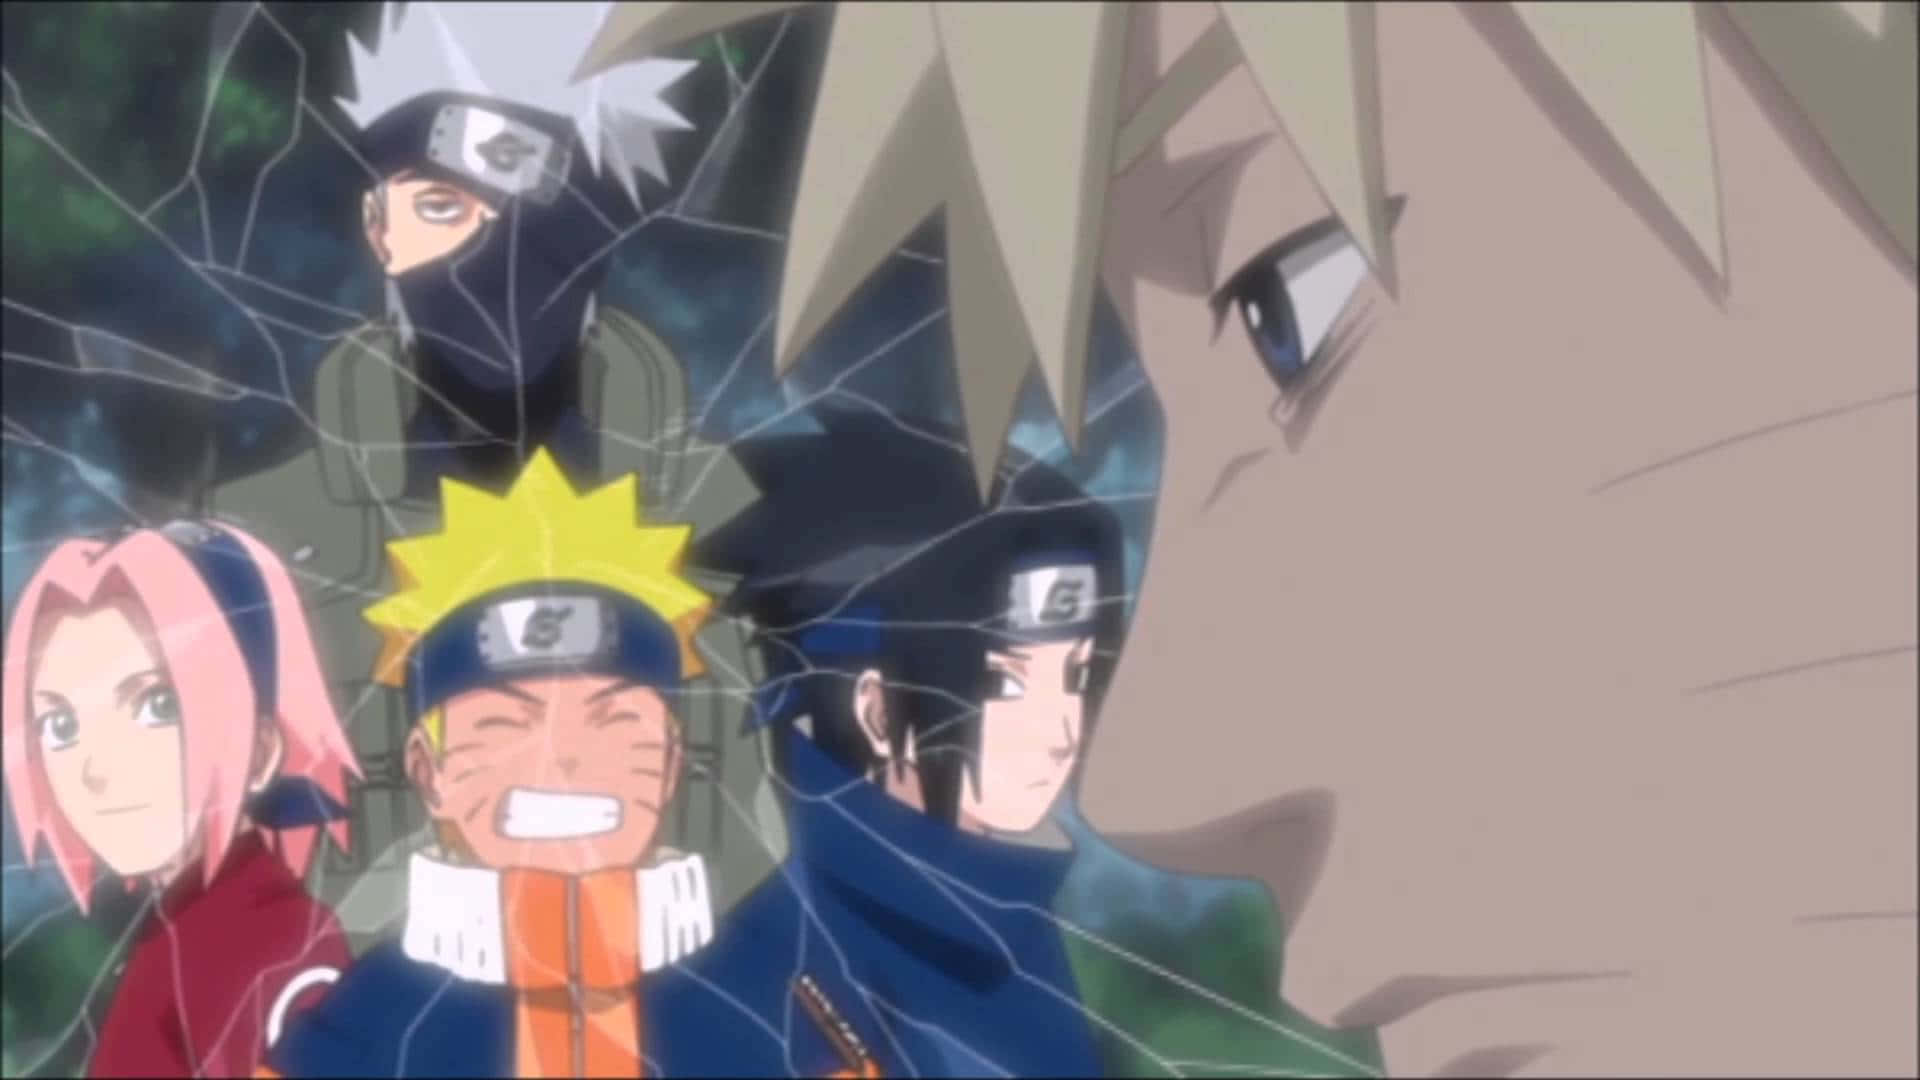 Image  Team 7 Naruto: Uzumaki Naruto, Uchiha Sasuke, Haruno Sakura, and Rock Lee Wallpaper